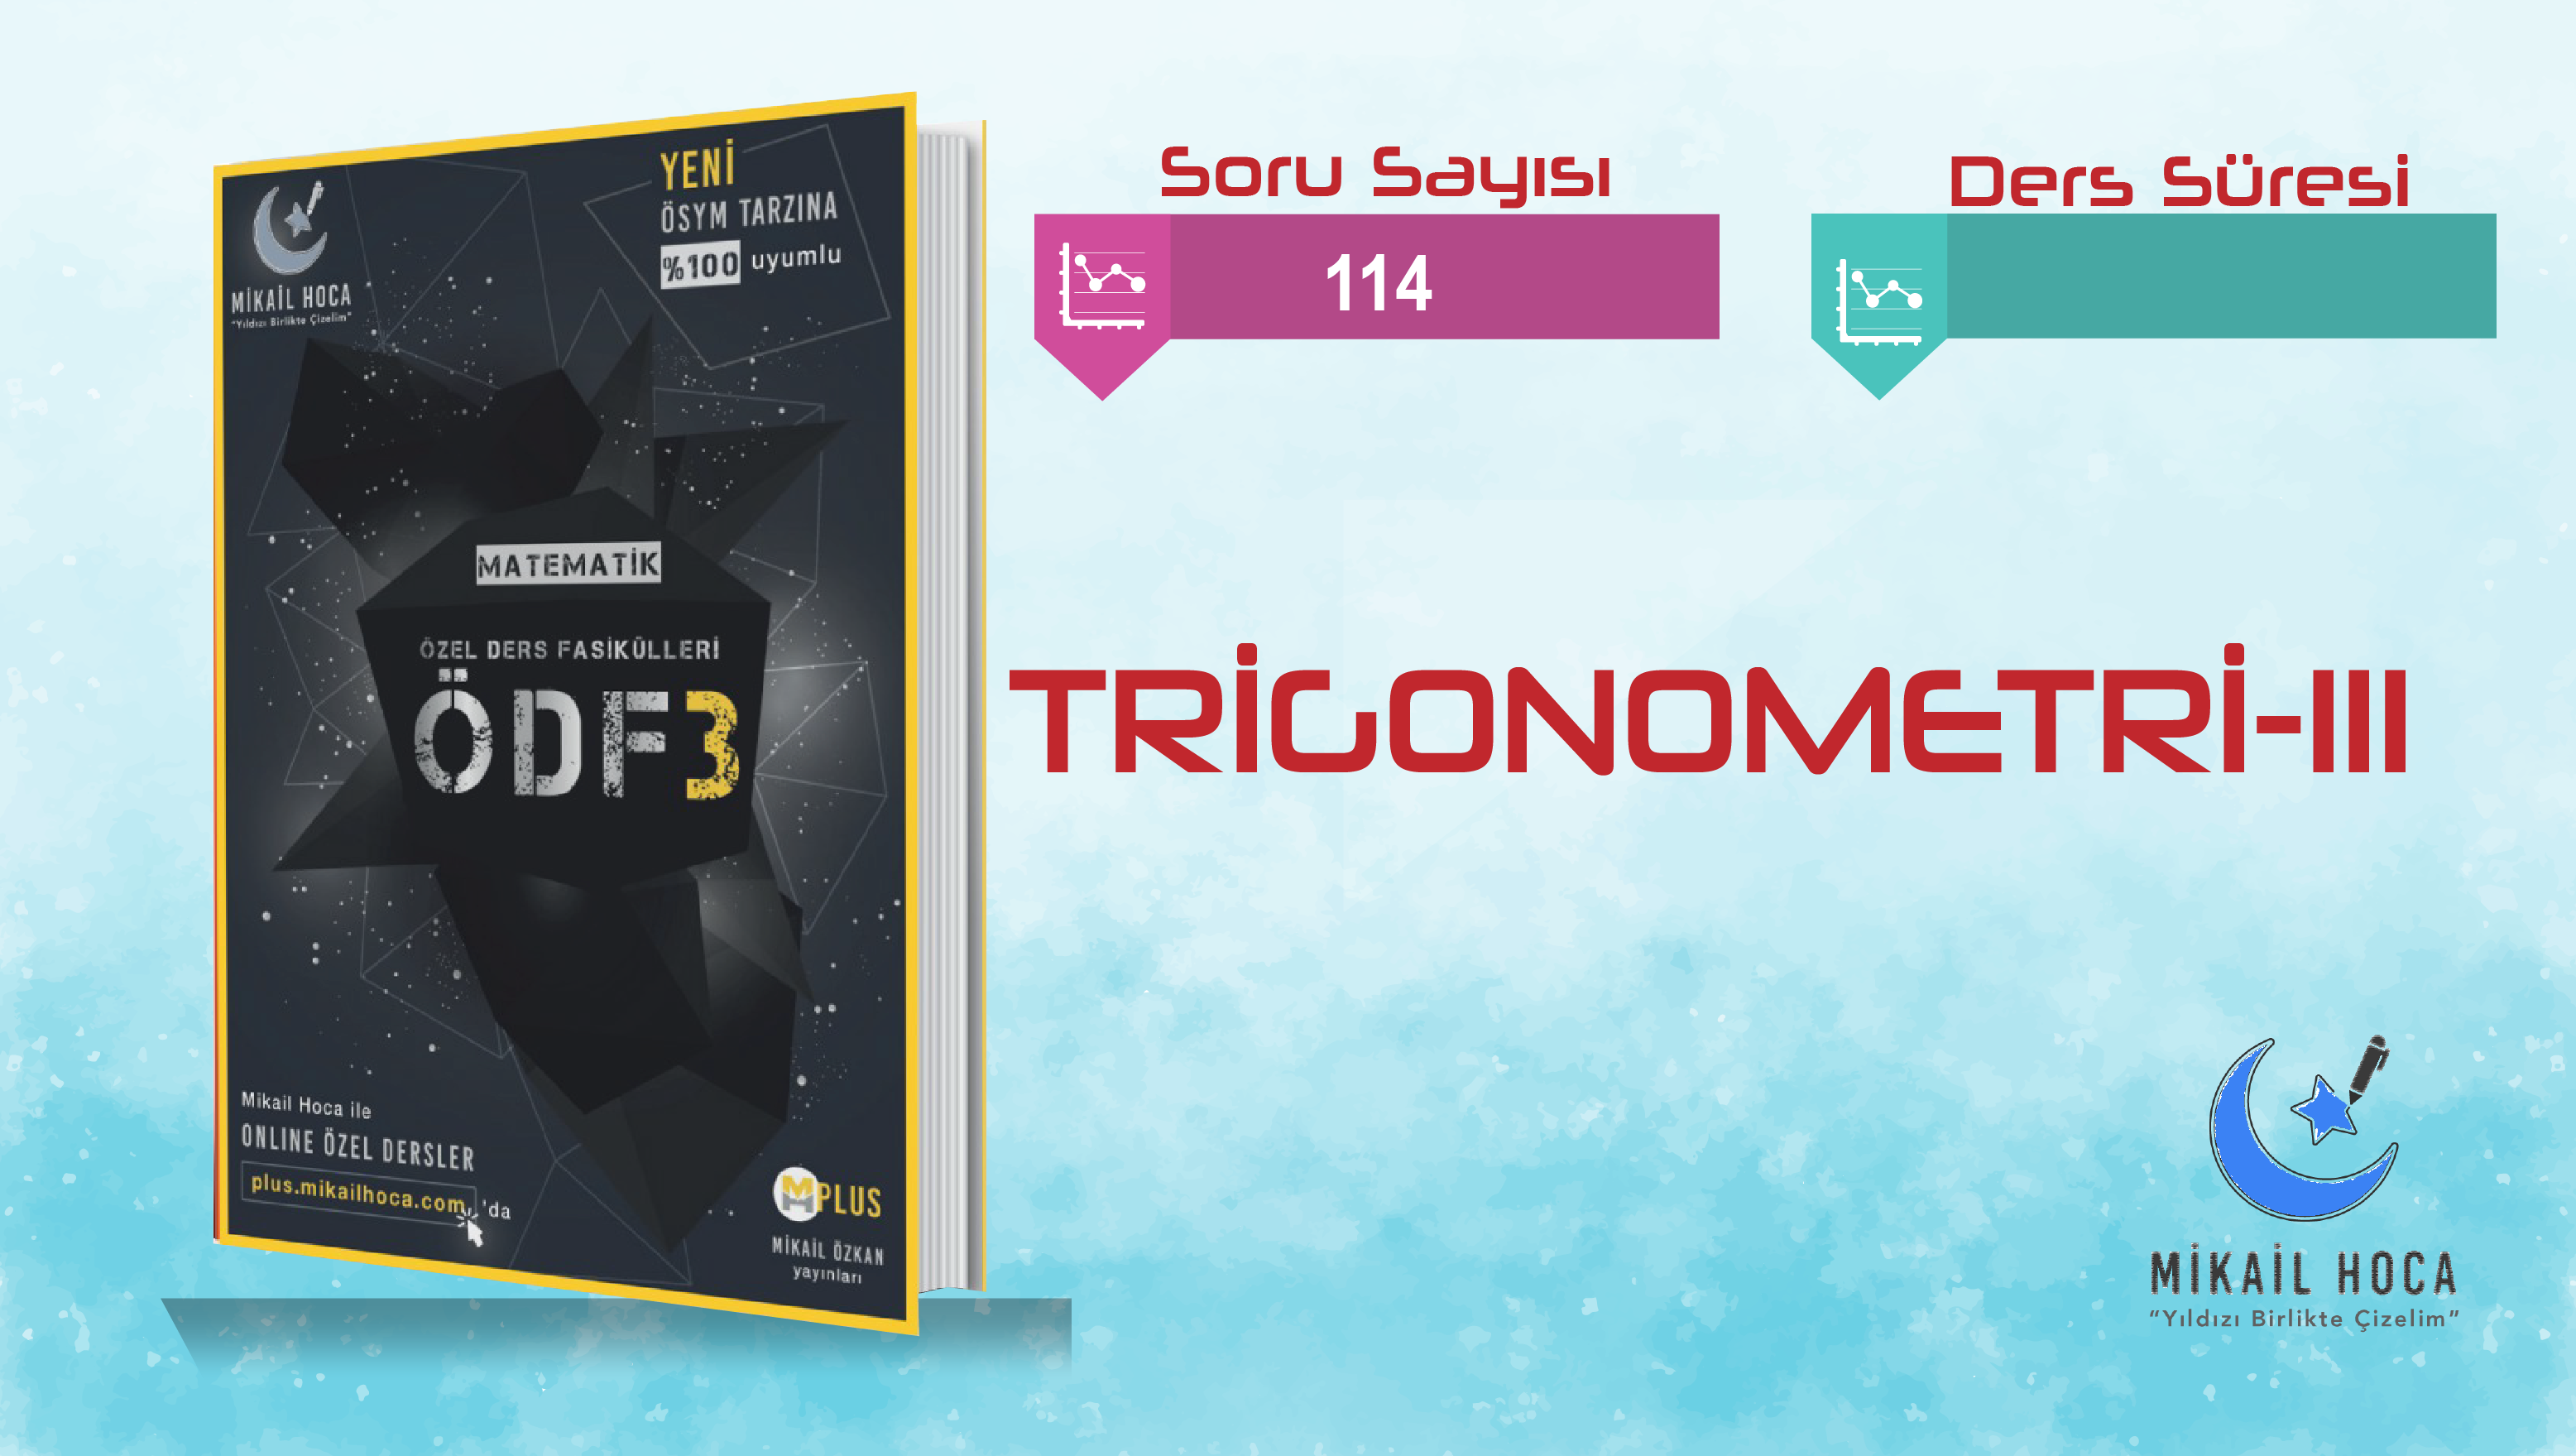 TRİGONOMETRİ 3 ÖDF-3